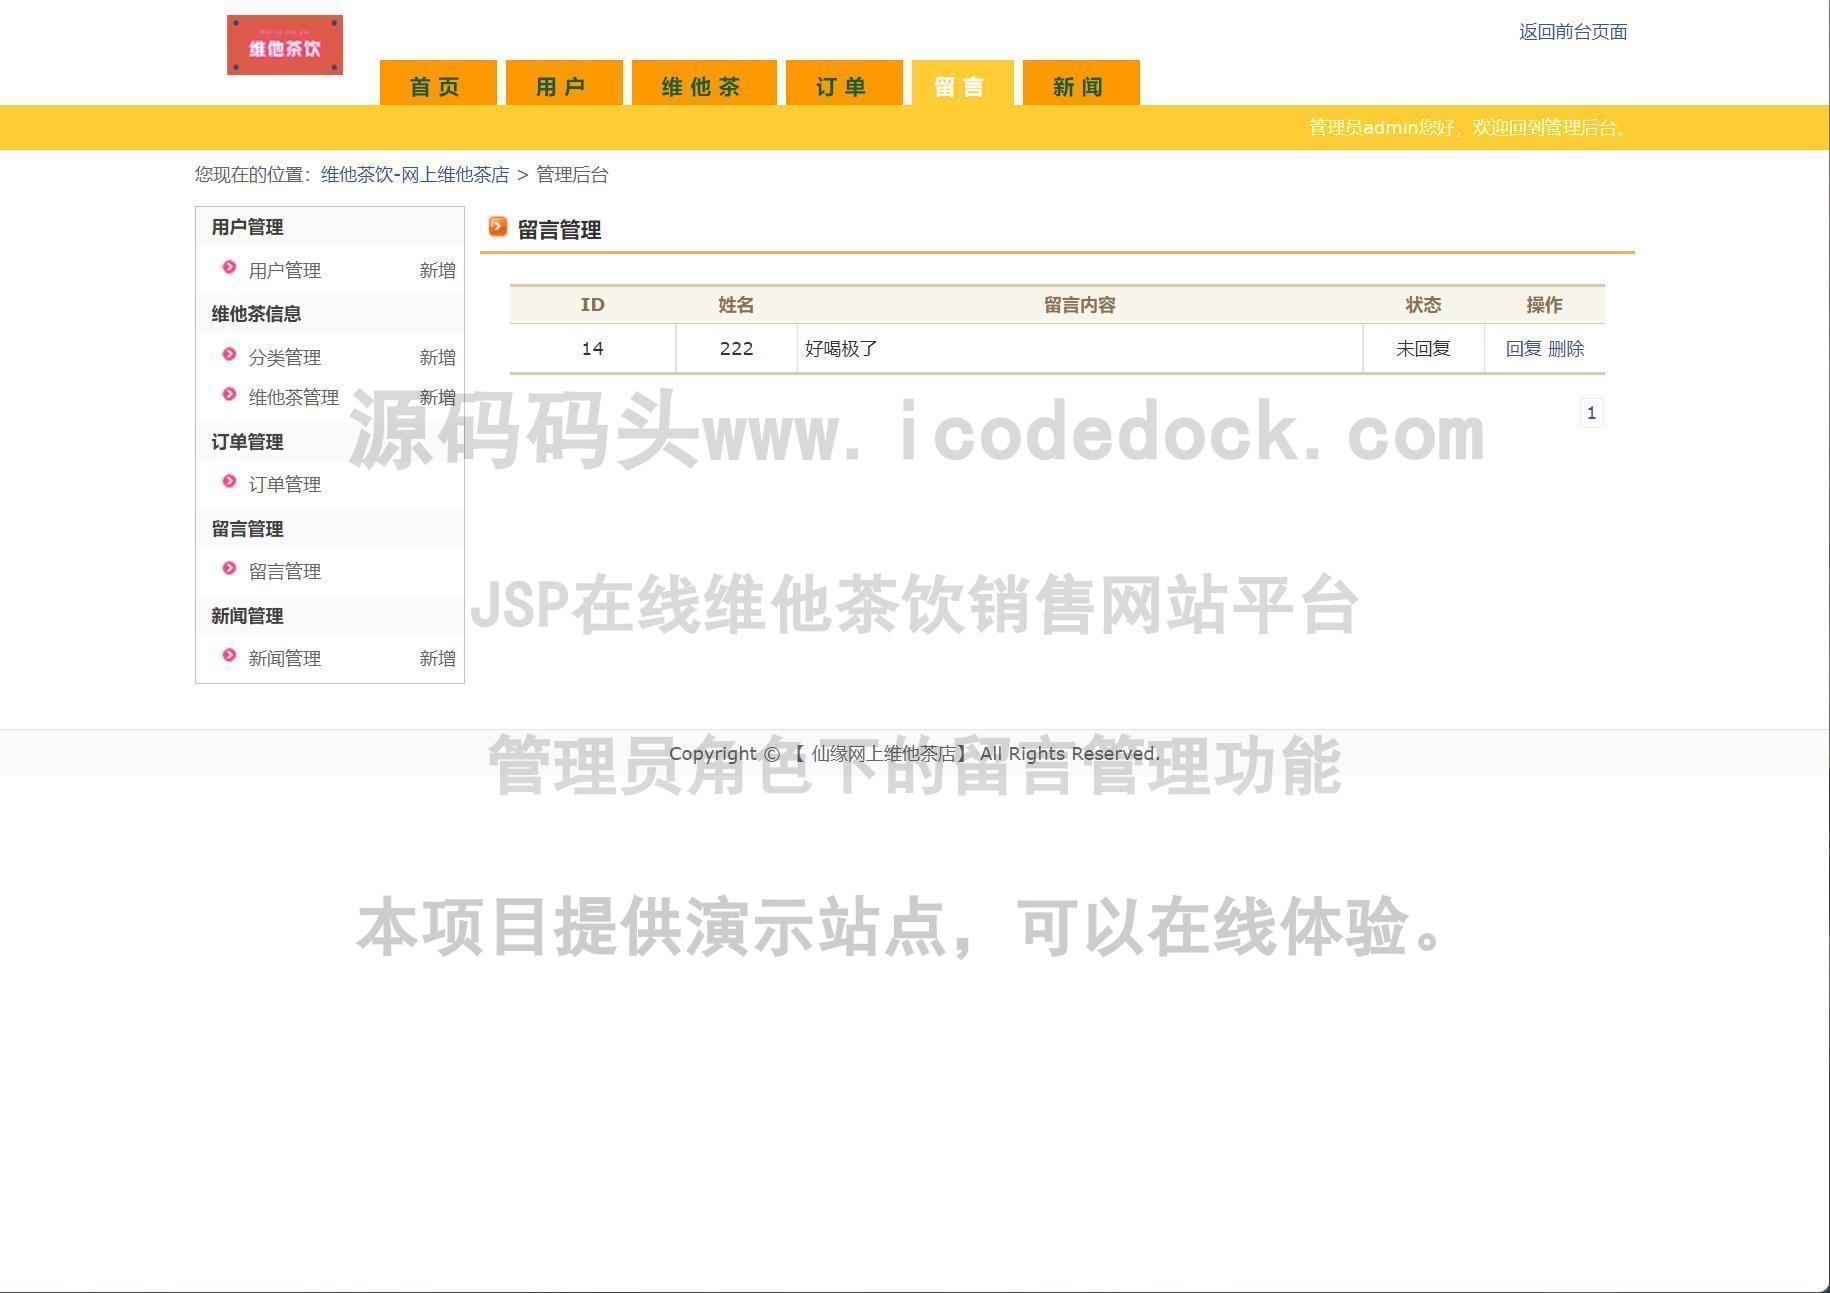 源码码头-JSP在线维他茶饮销售网站平台-管理员角色-留言管理